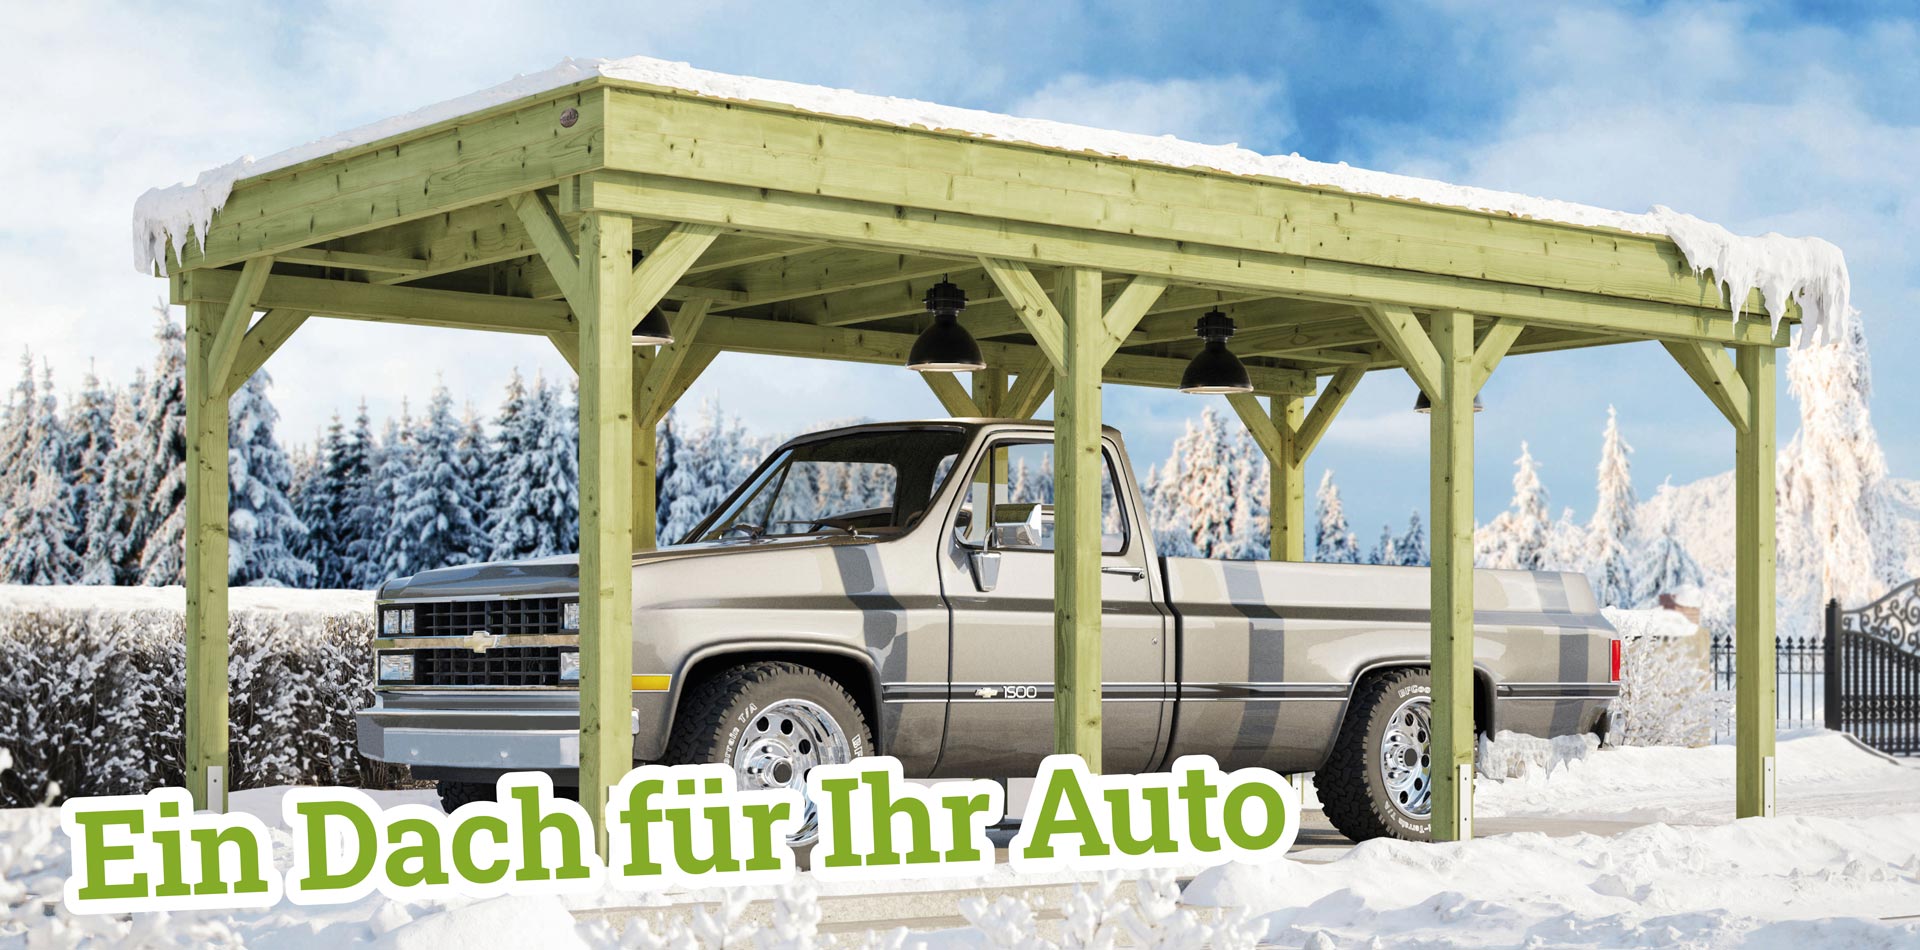 Ein Auto parkt unter einem Carport, der für eine extra hohe Schneelast geeignet ist, in verschneiter Winterlandschaft.